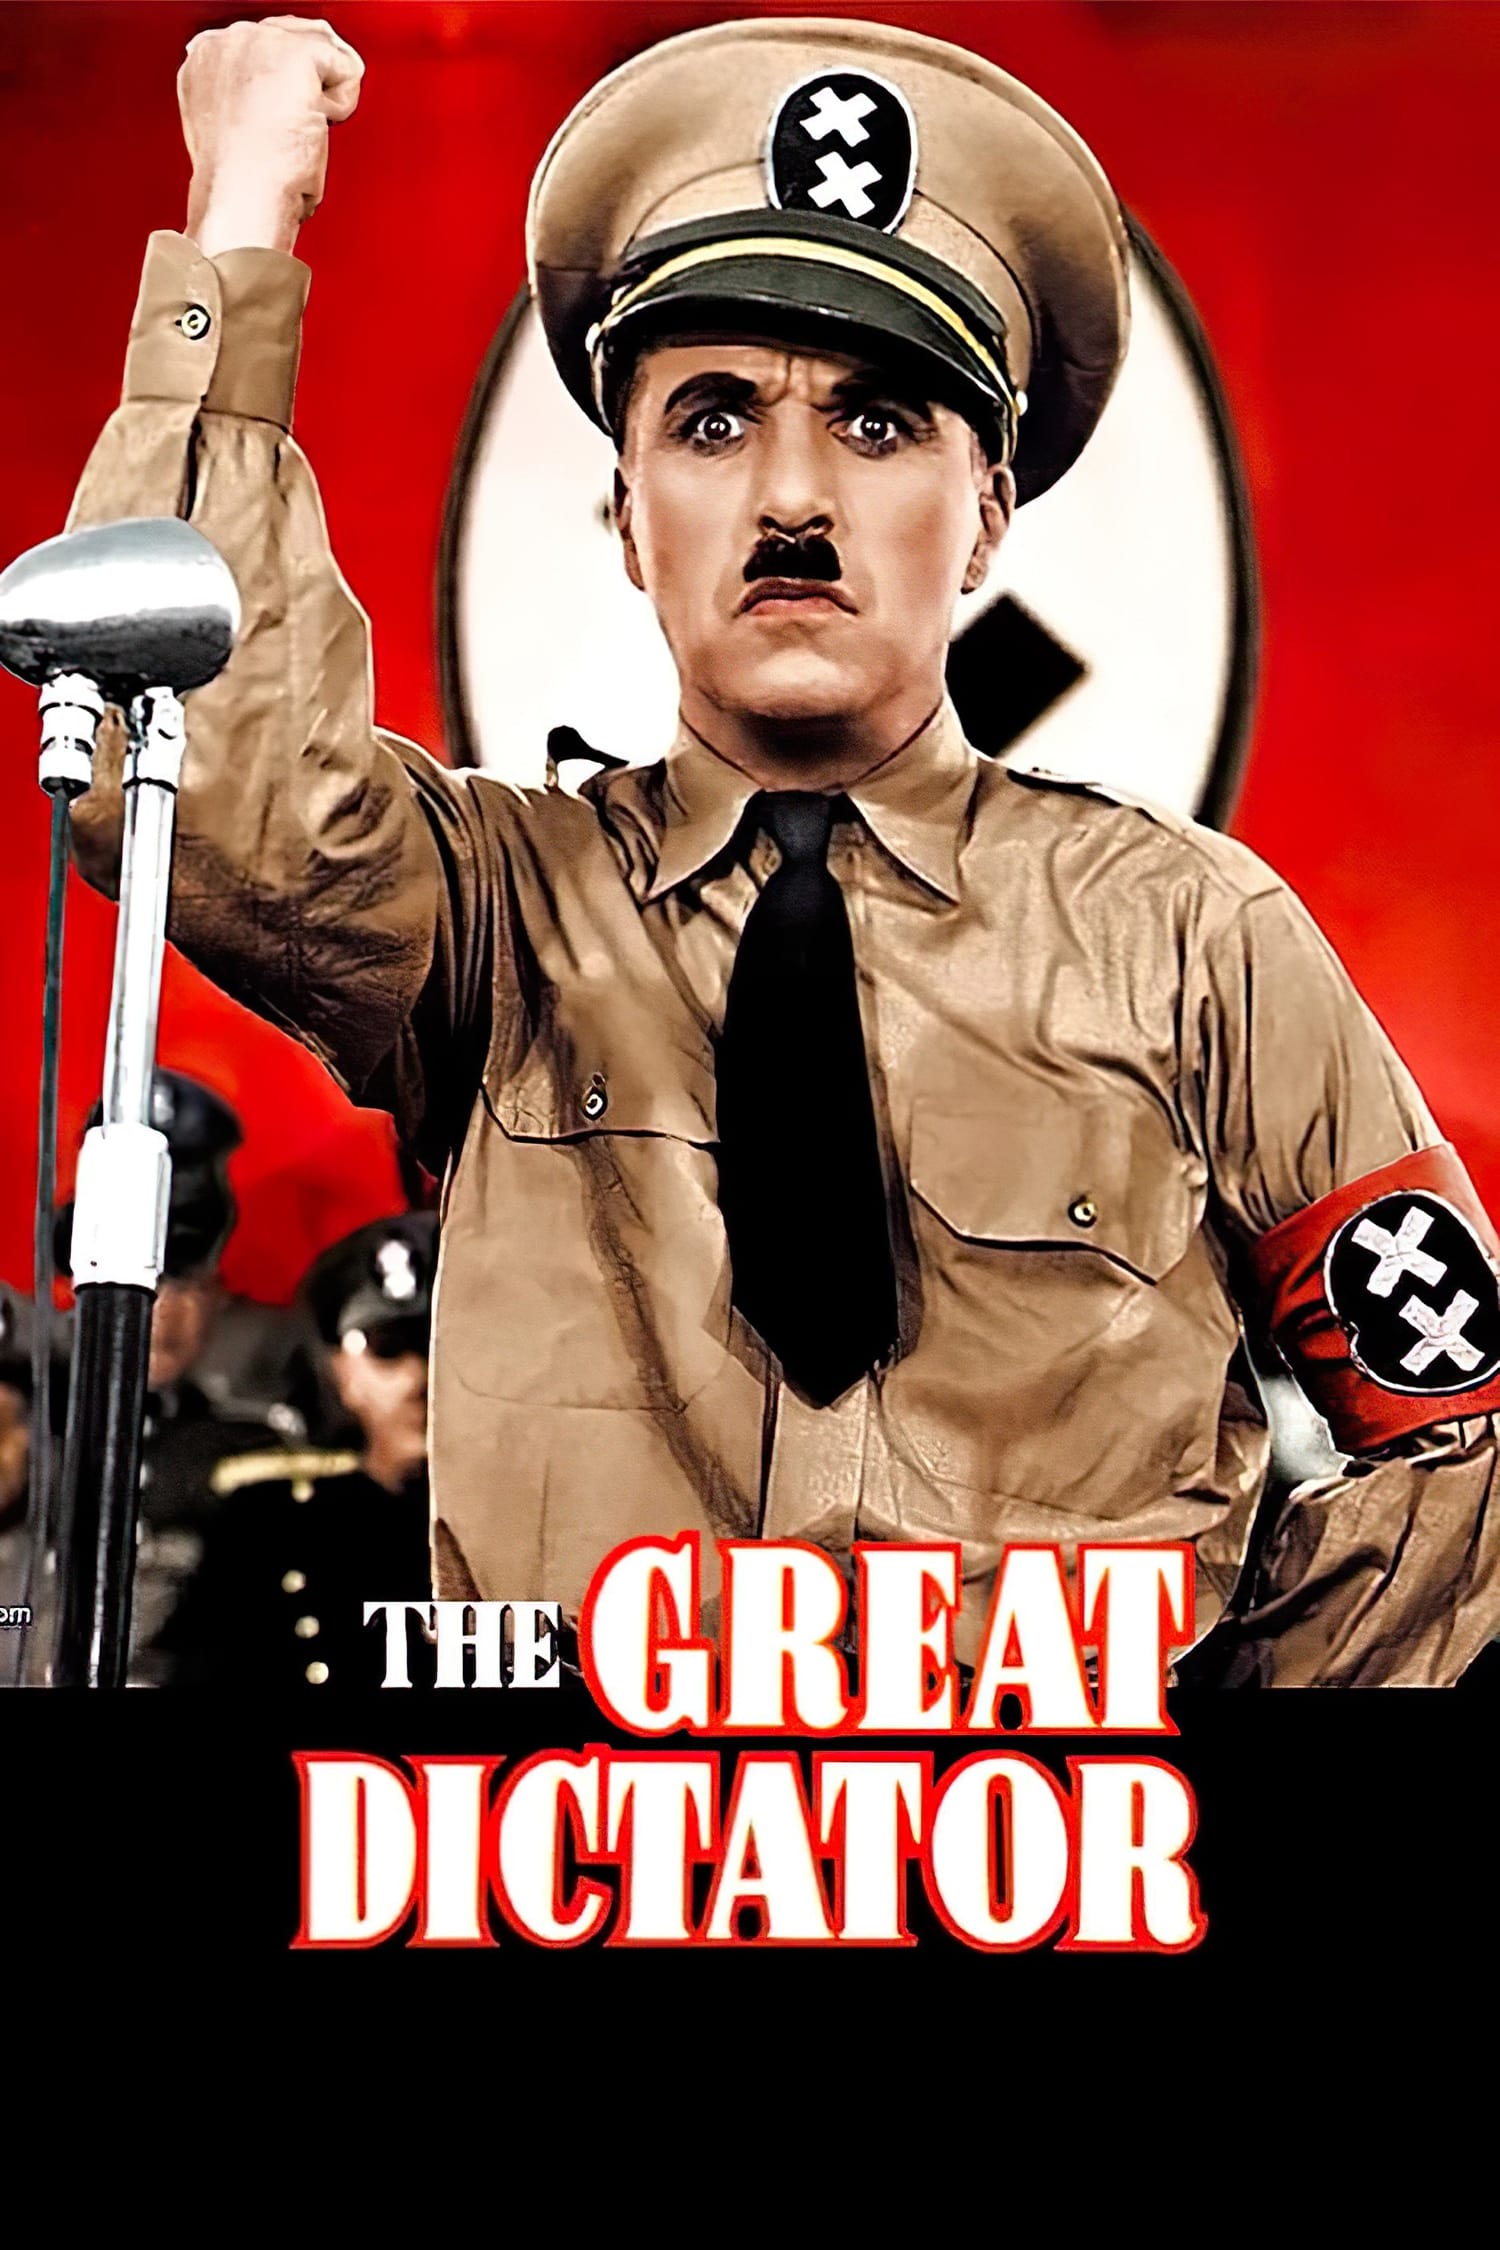 Der große Diktator